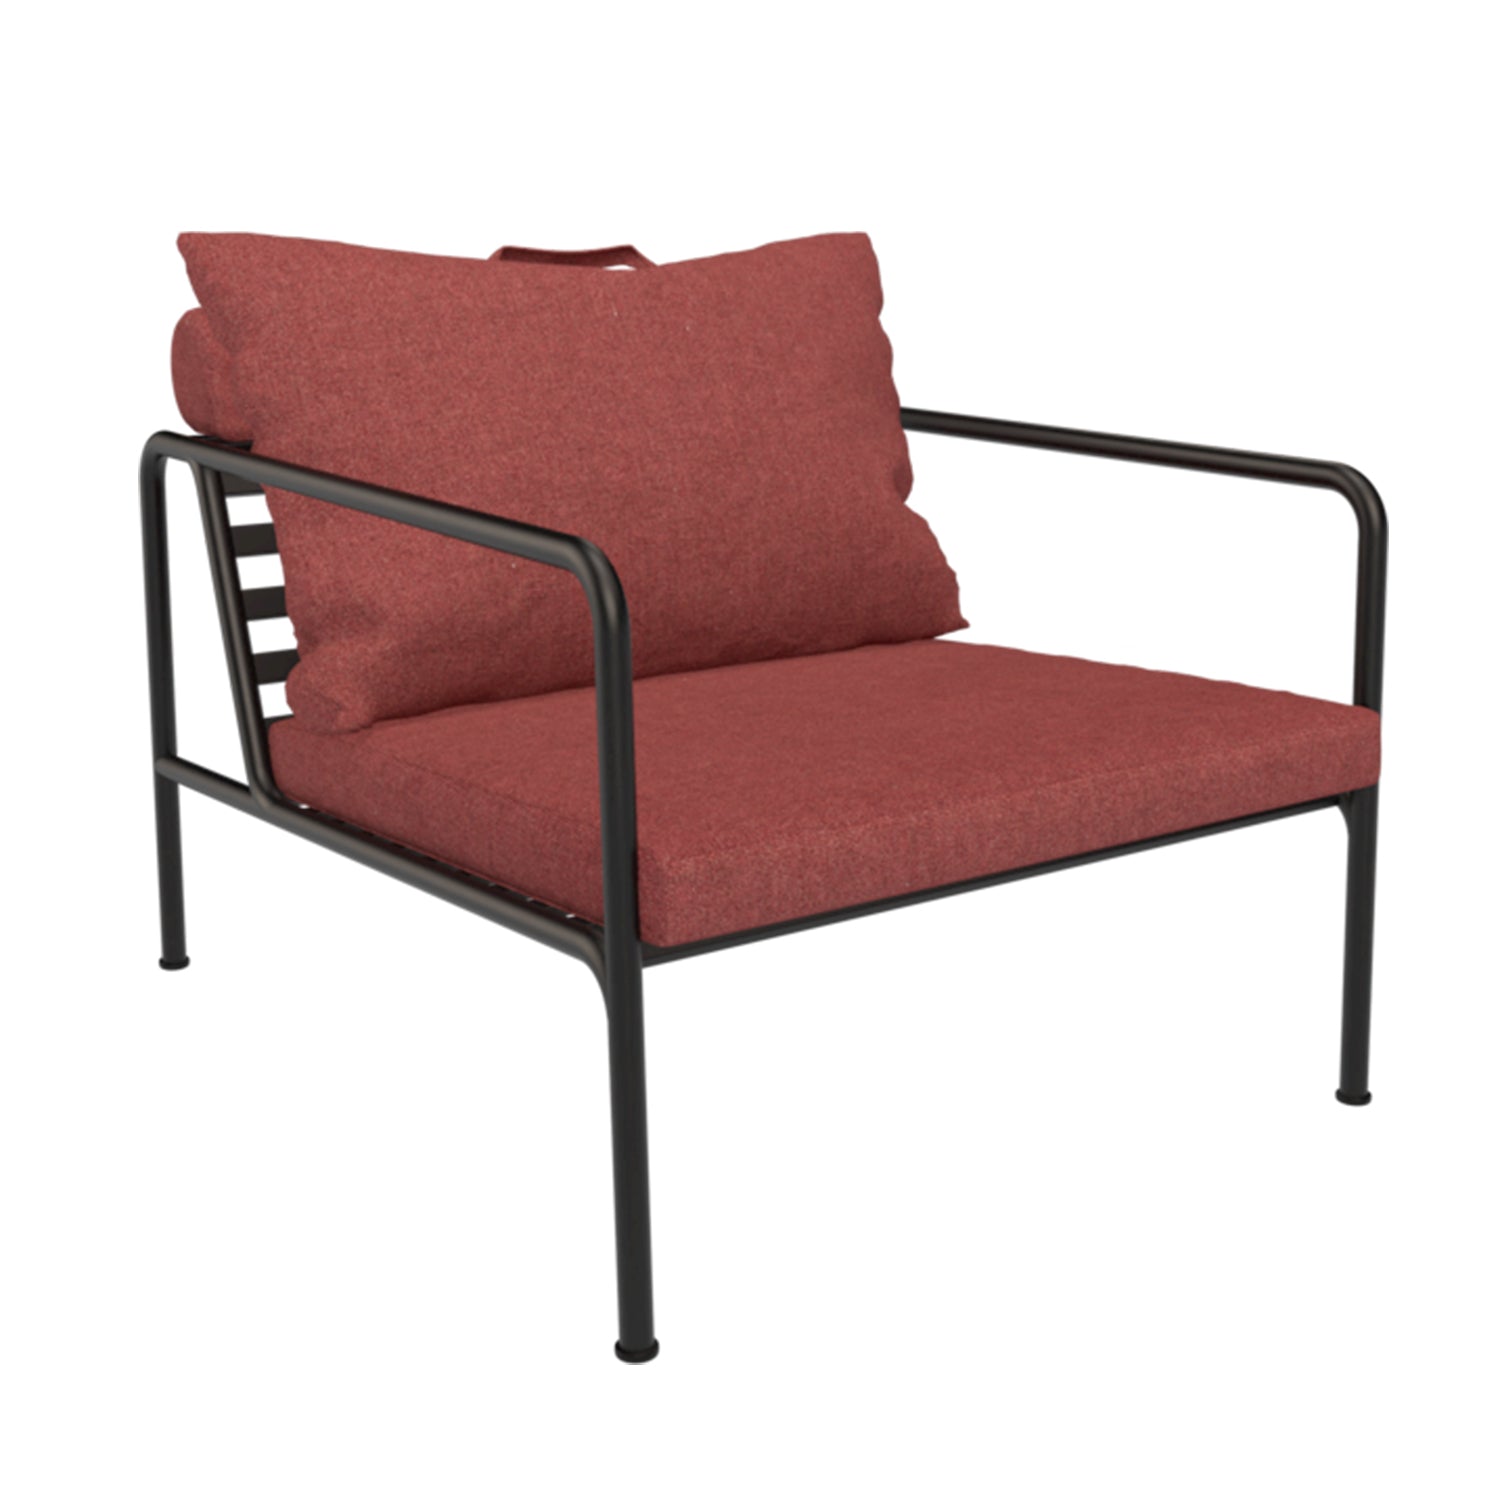 Avon Chair - The Design Choice